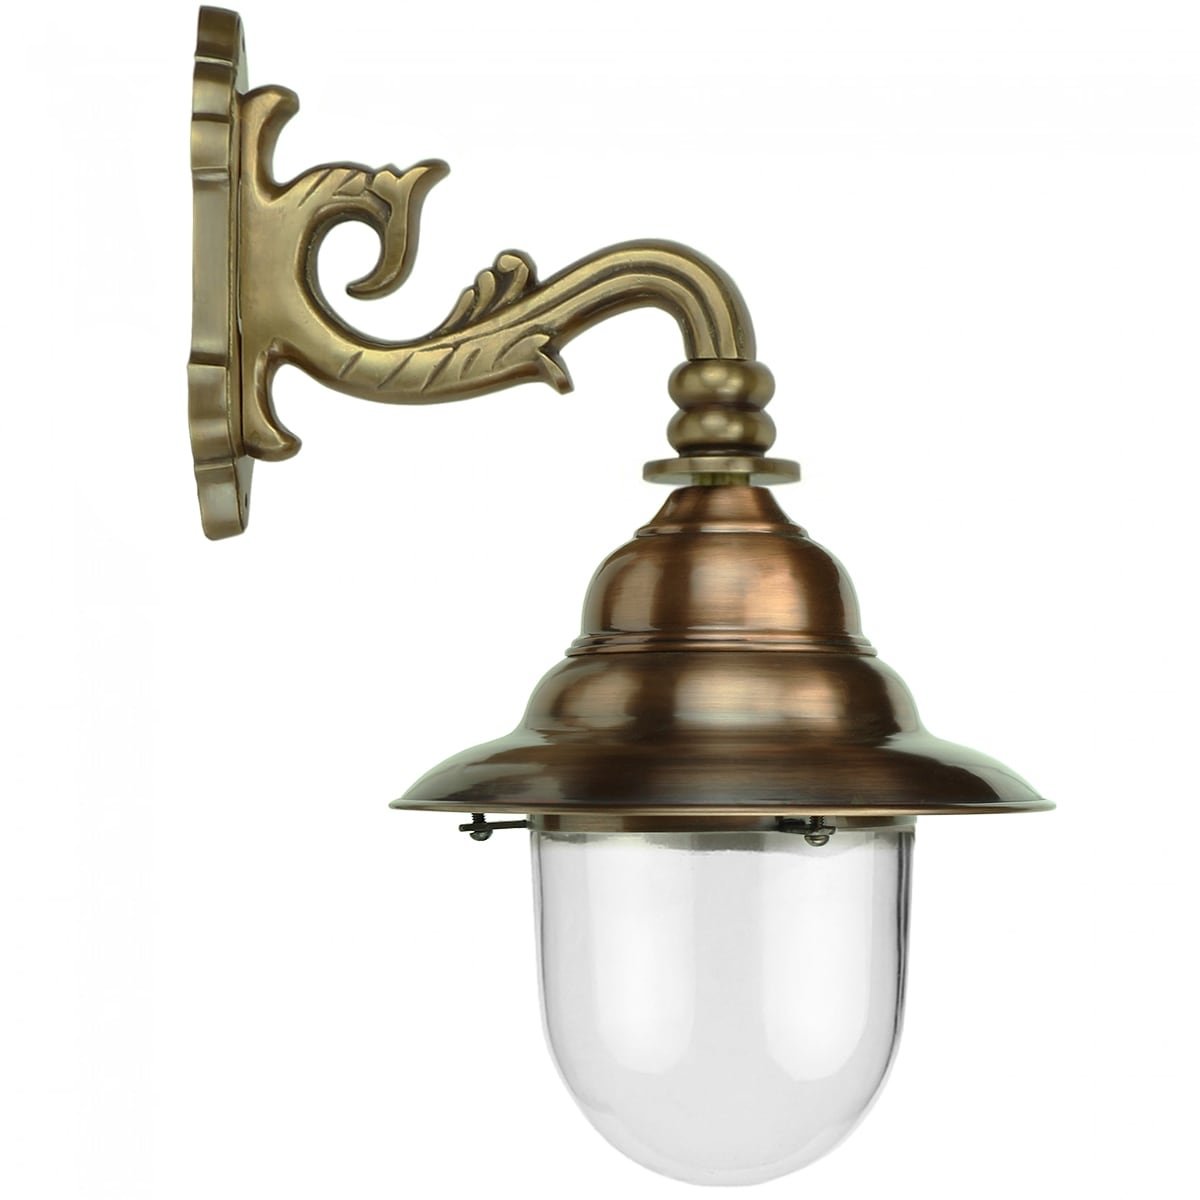 Buitenverlichting Klassiek Landelijk Franse stallamp Zierikzee brons - 53 cm